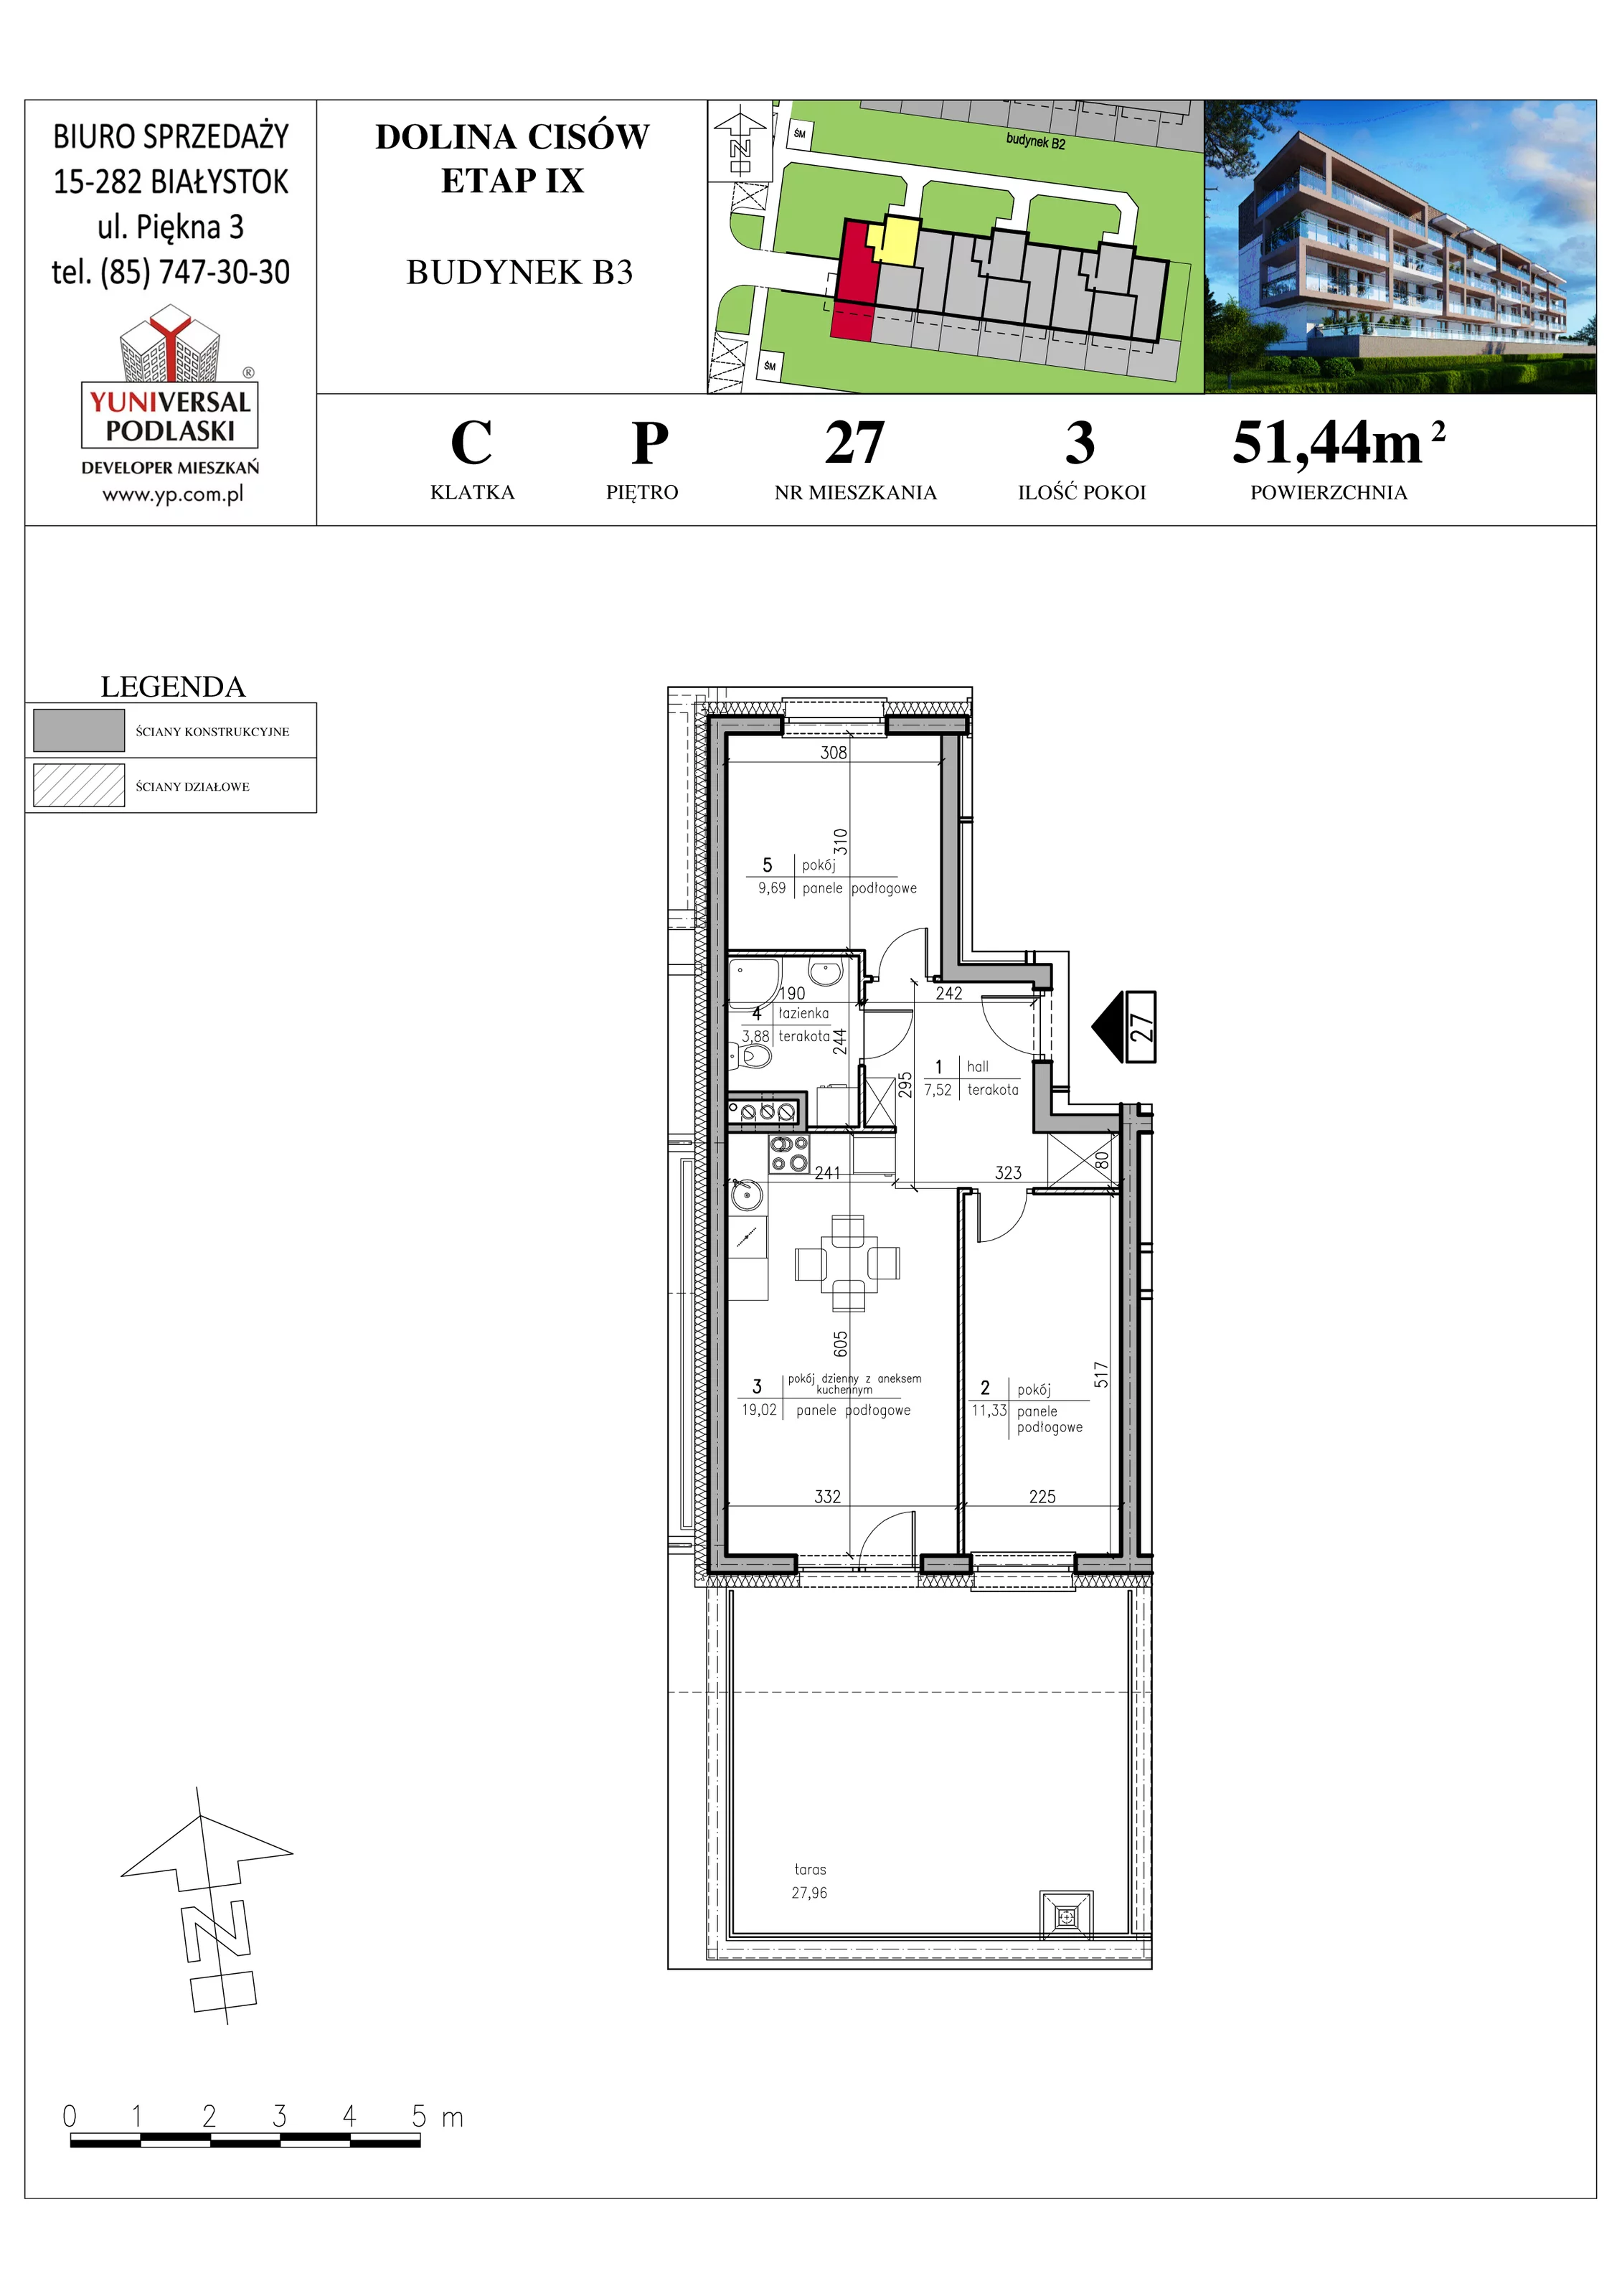 Mieszkanie 51,44 m², parter, oferta nr B3-27, Osiedle Dolina Cisów - Etap IX, Wasilków, ul. Nadawki